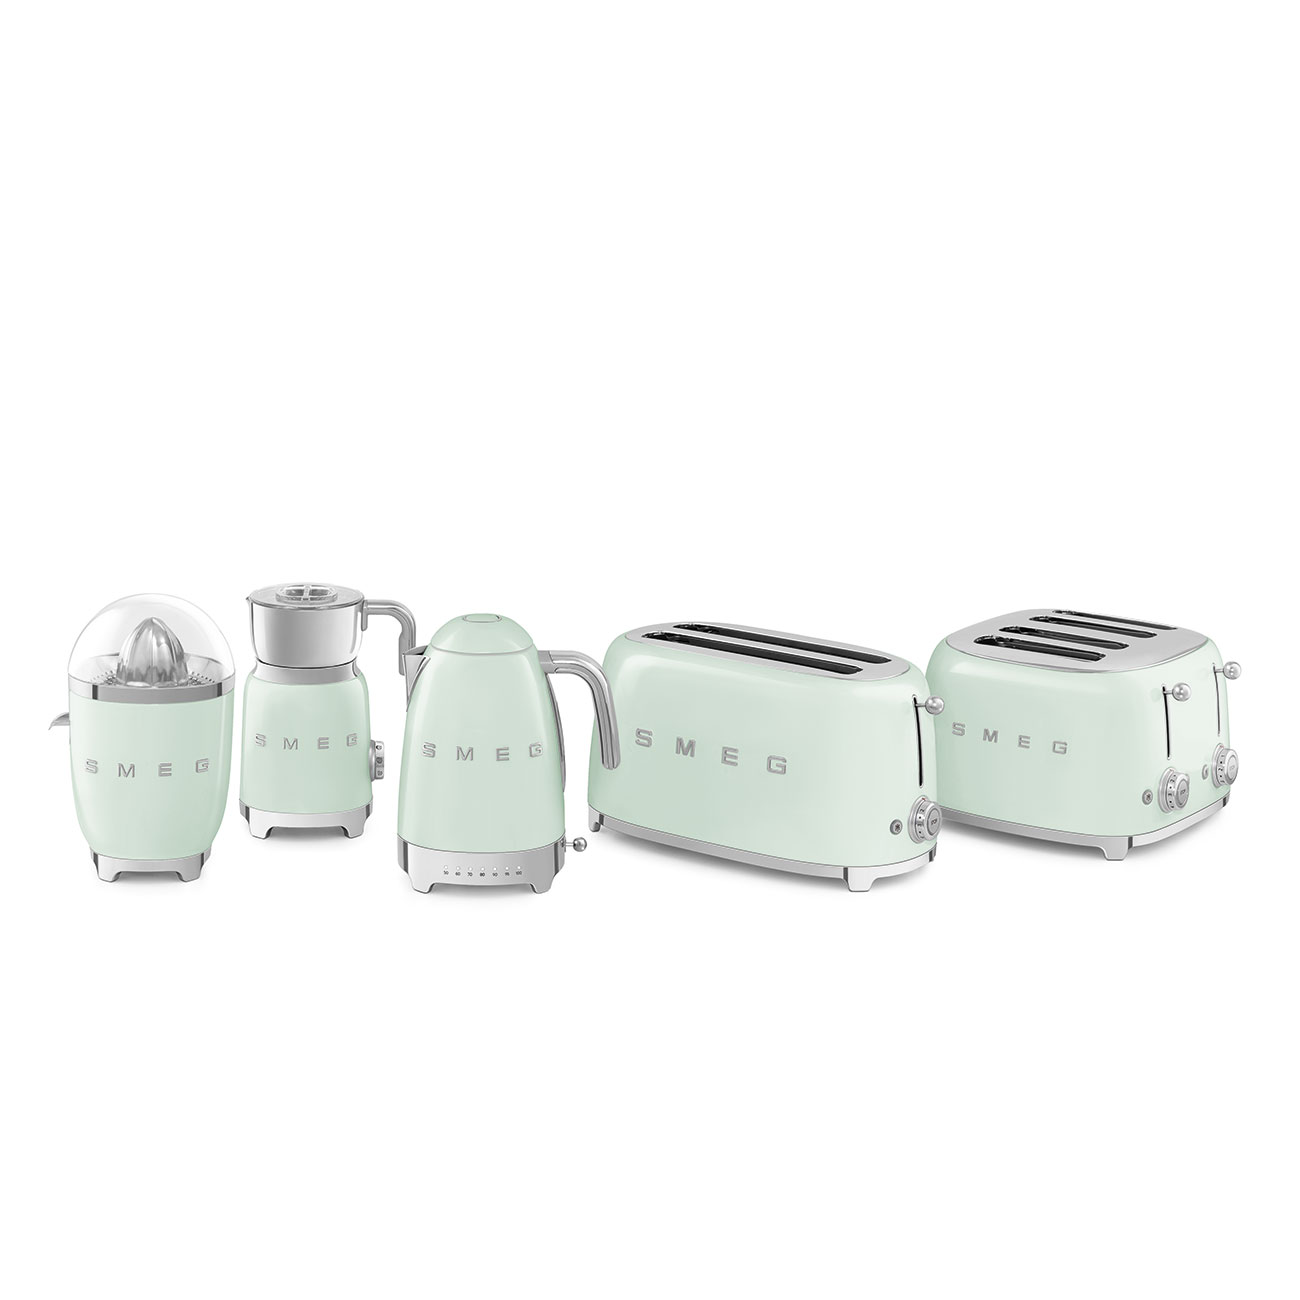 Grille-pain Toaster Smeg TSF02PGEU - Vert d'Eau - Chardenon Équipe votre  maison